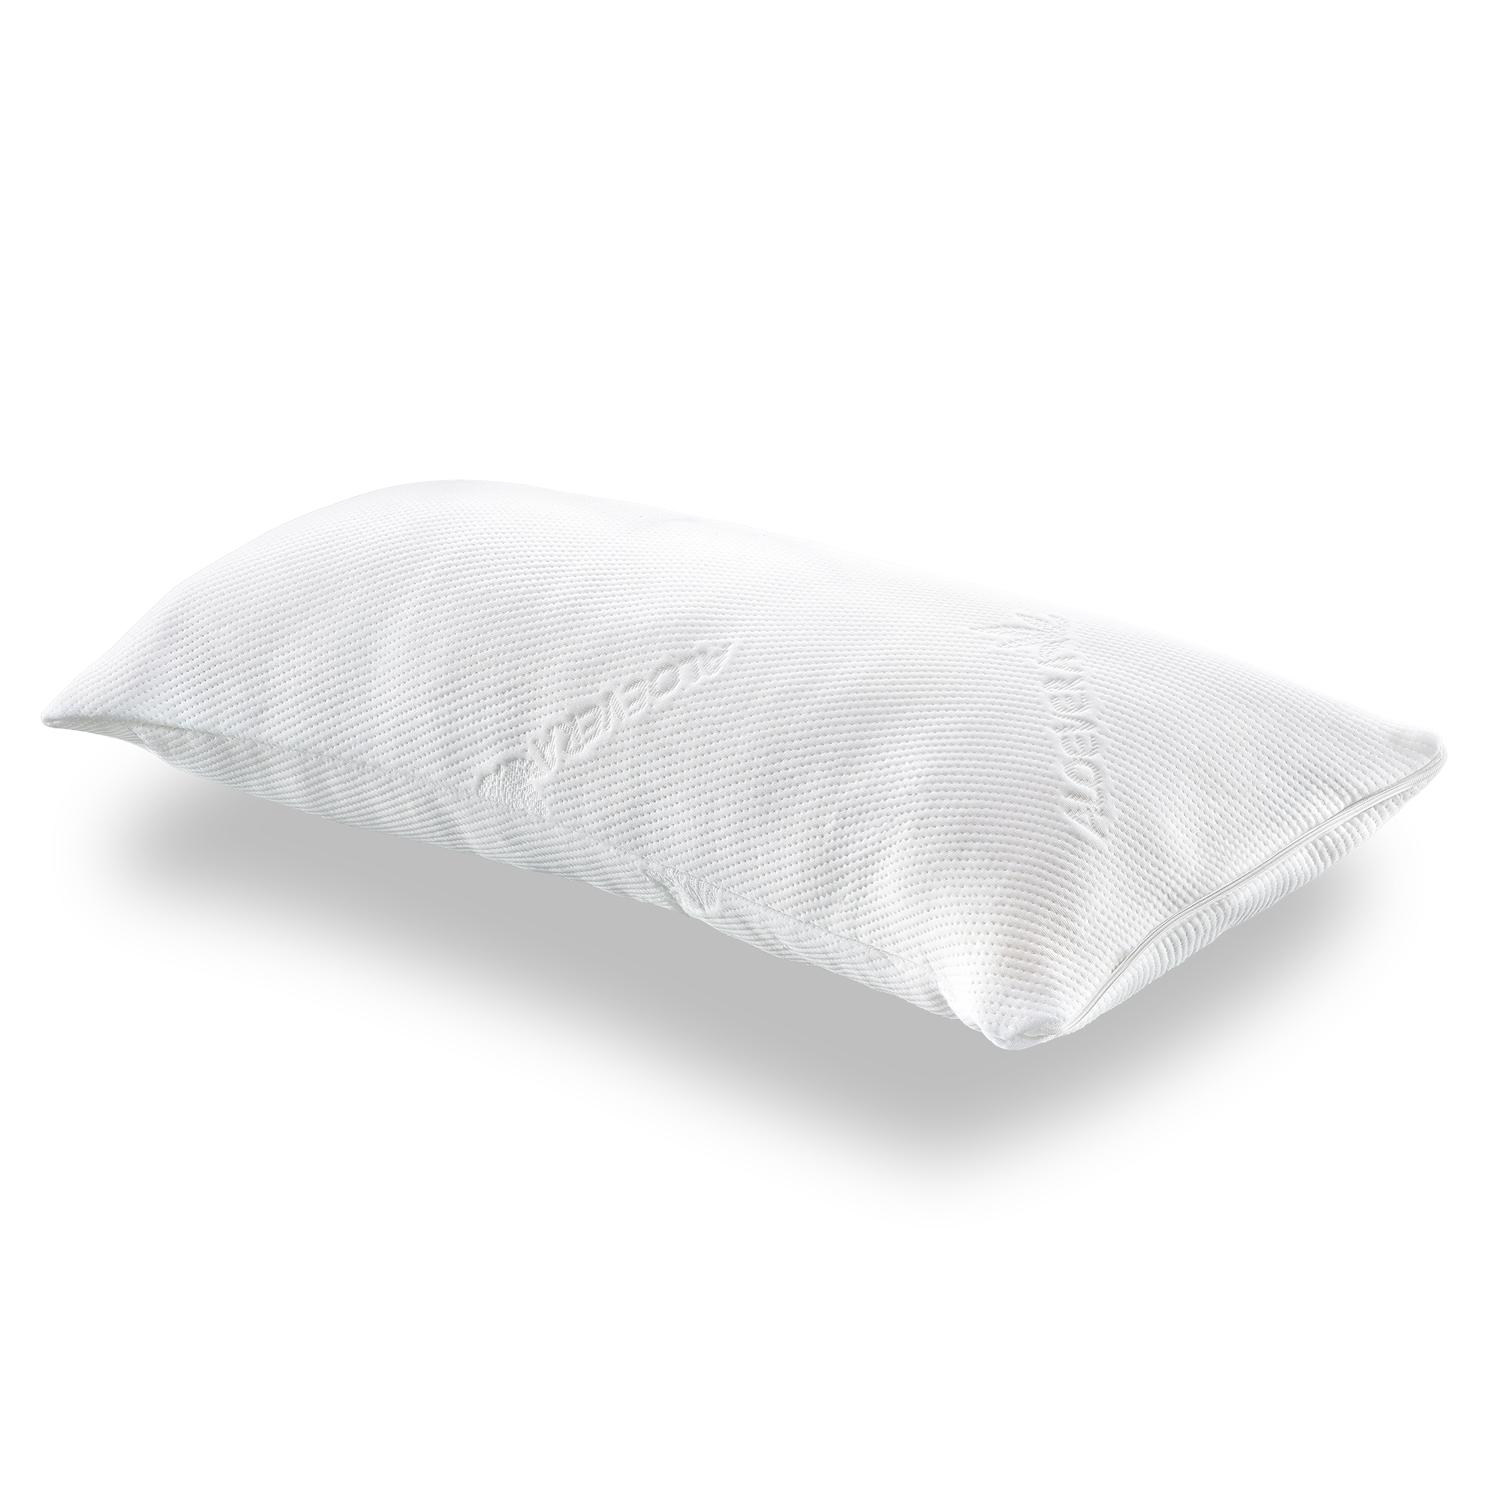 CloudComfort visco-elastisch comfort slaapkussen 40 x 80 cm